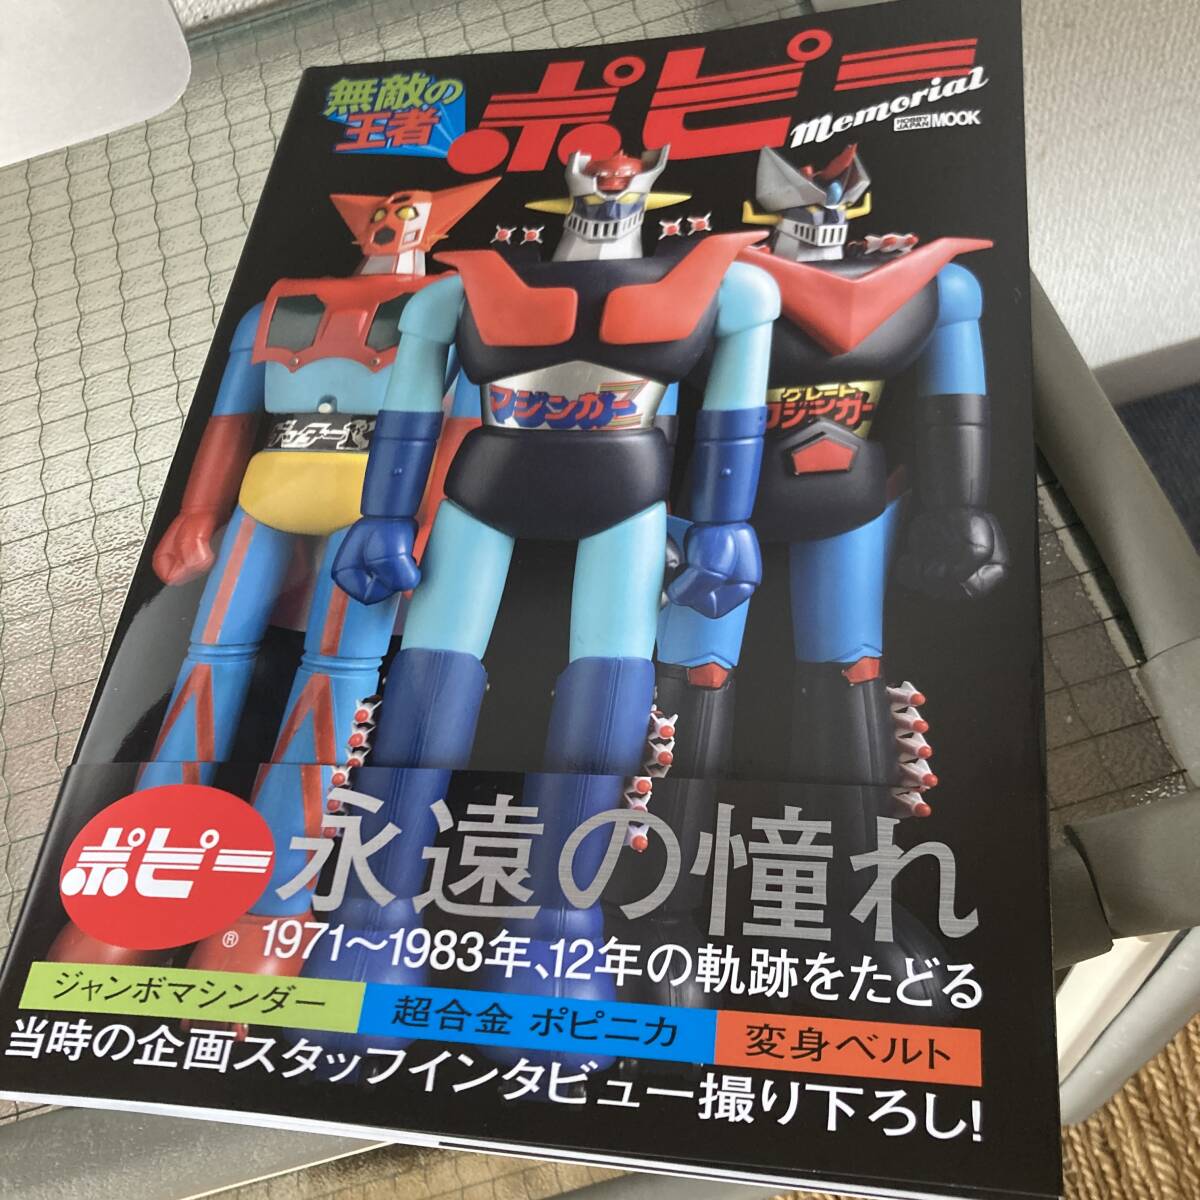  кошка pohs 230 иен новый товар книга@ Mucc непревзойденный . человек мак Memorial Chogokin jumbo механизм da- хобби Japan Mazinger Z